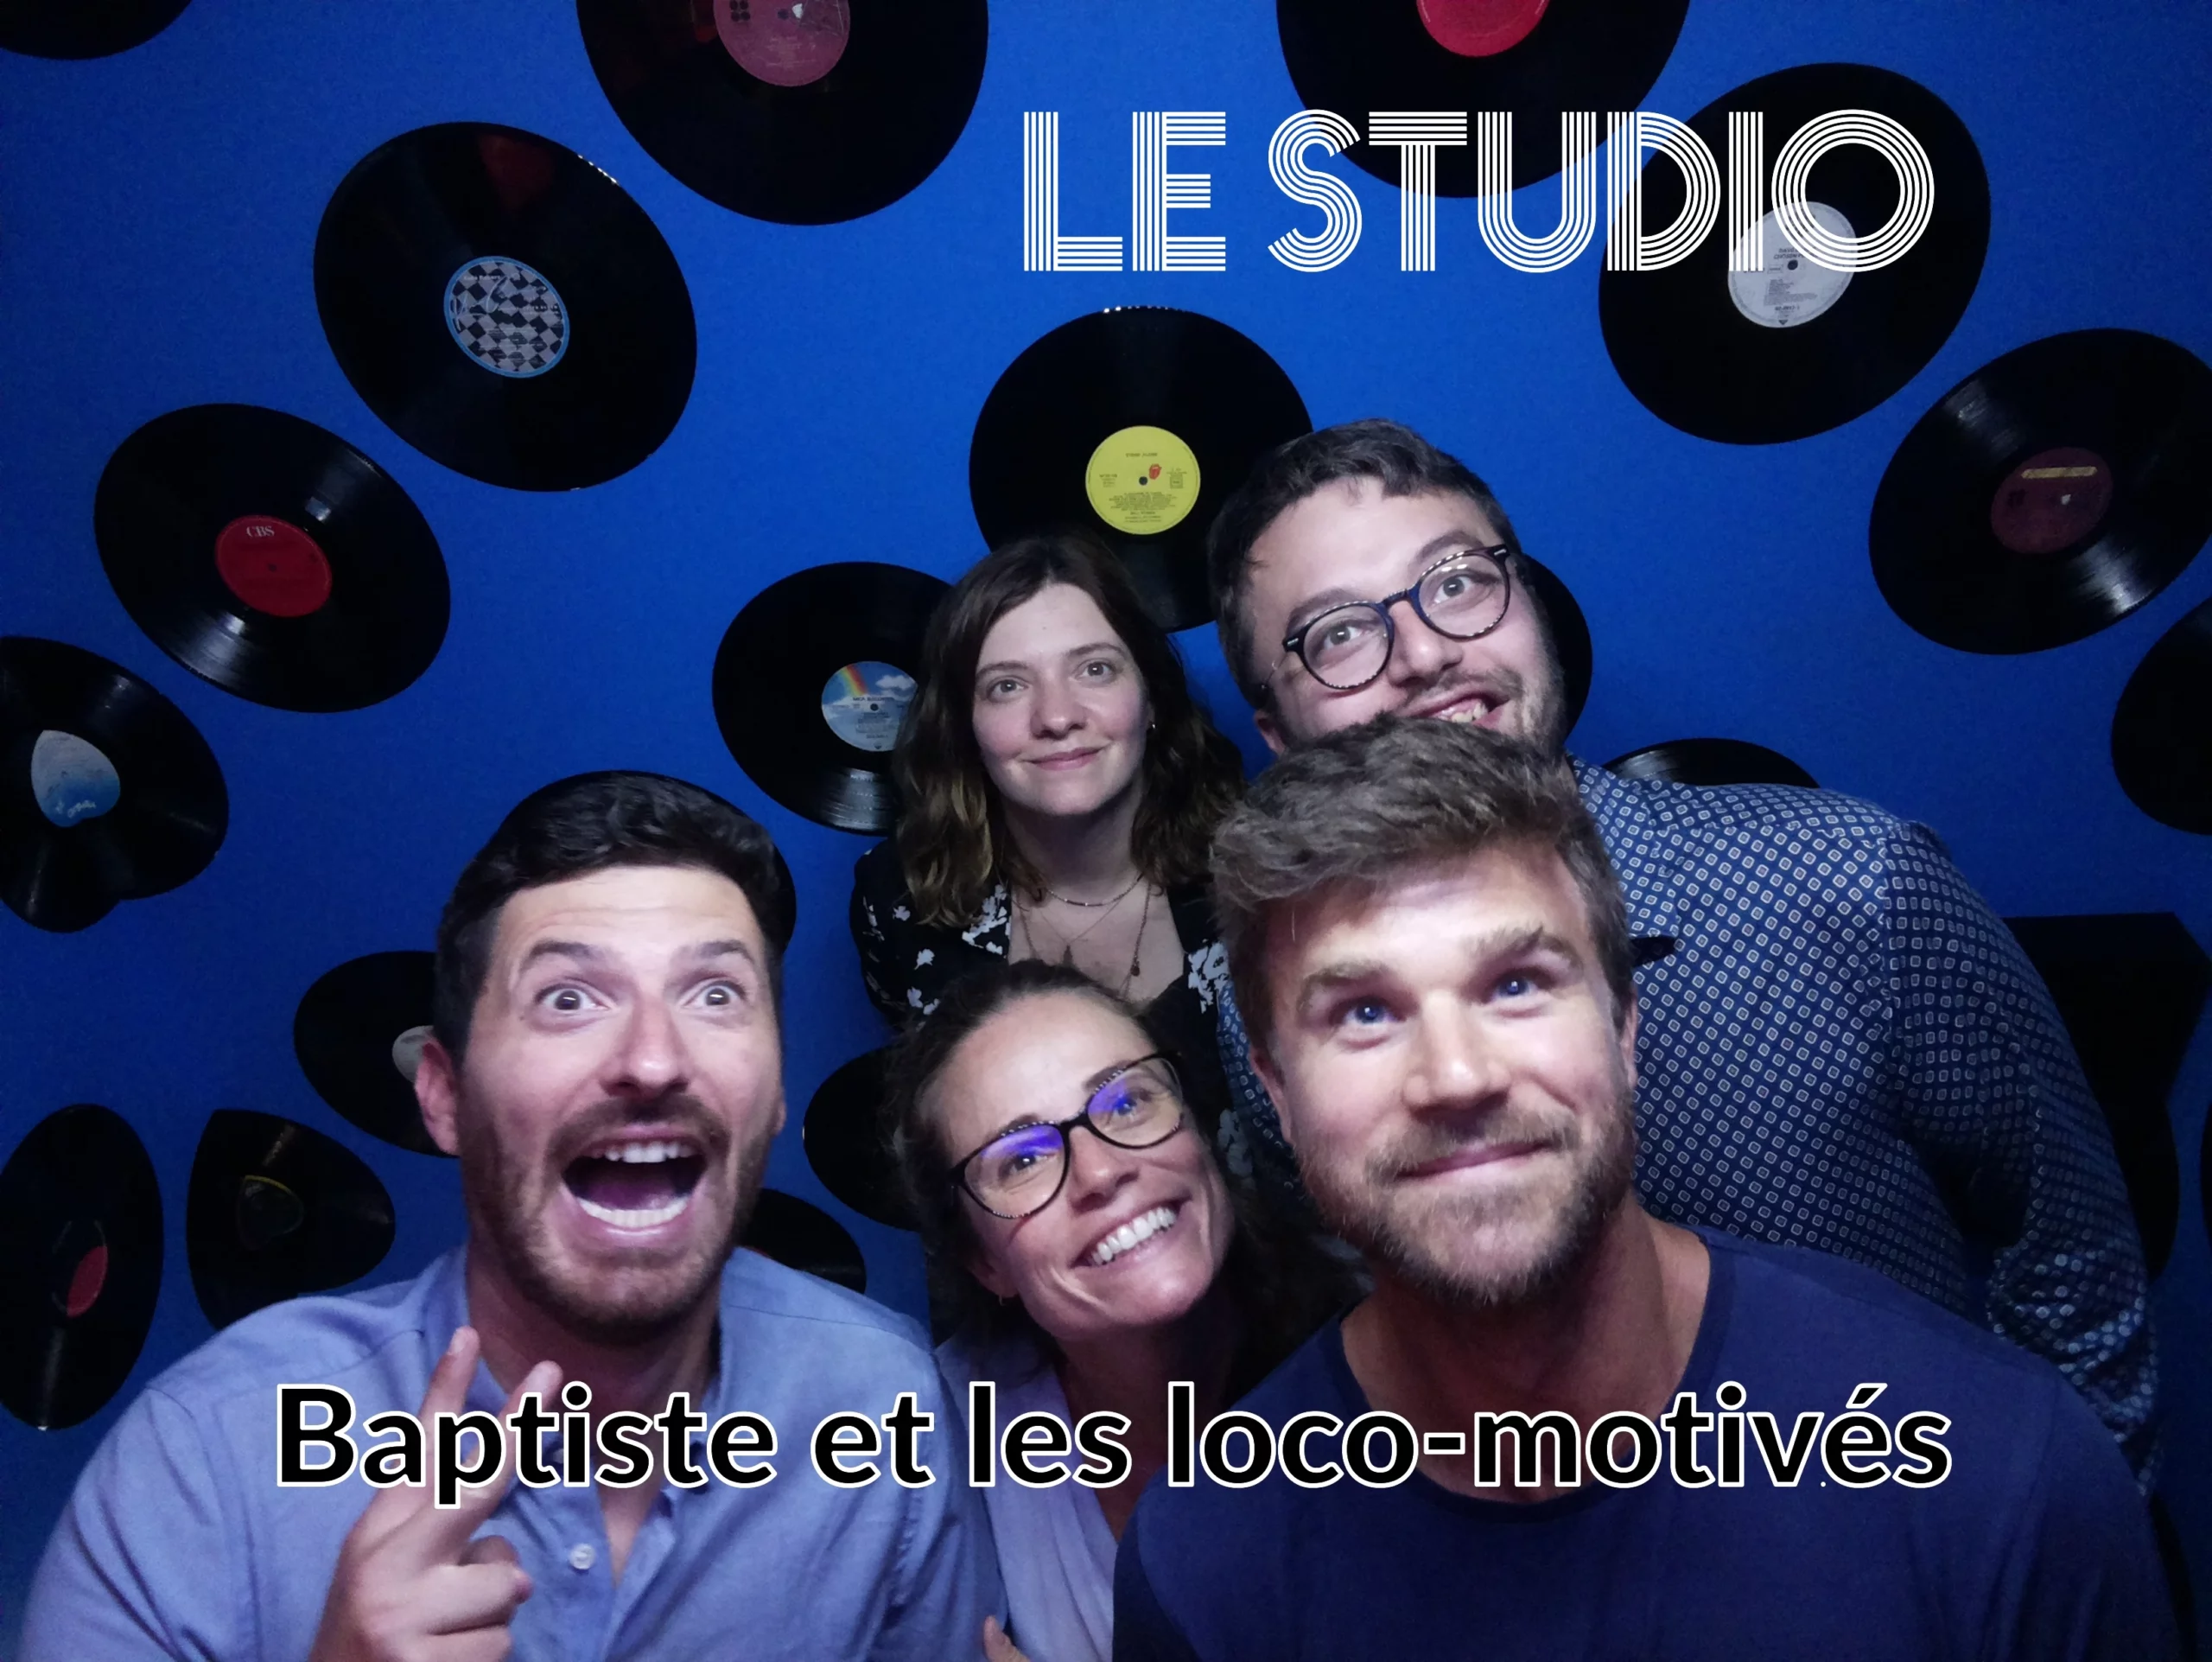 Baptiste et les loco-motivés, une team de 5 hommes qui a fait le meilleur temps du mois sur le thème du Studio